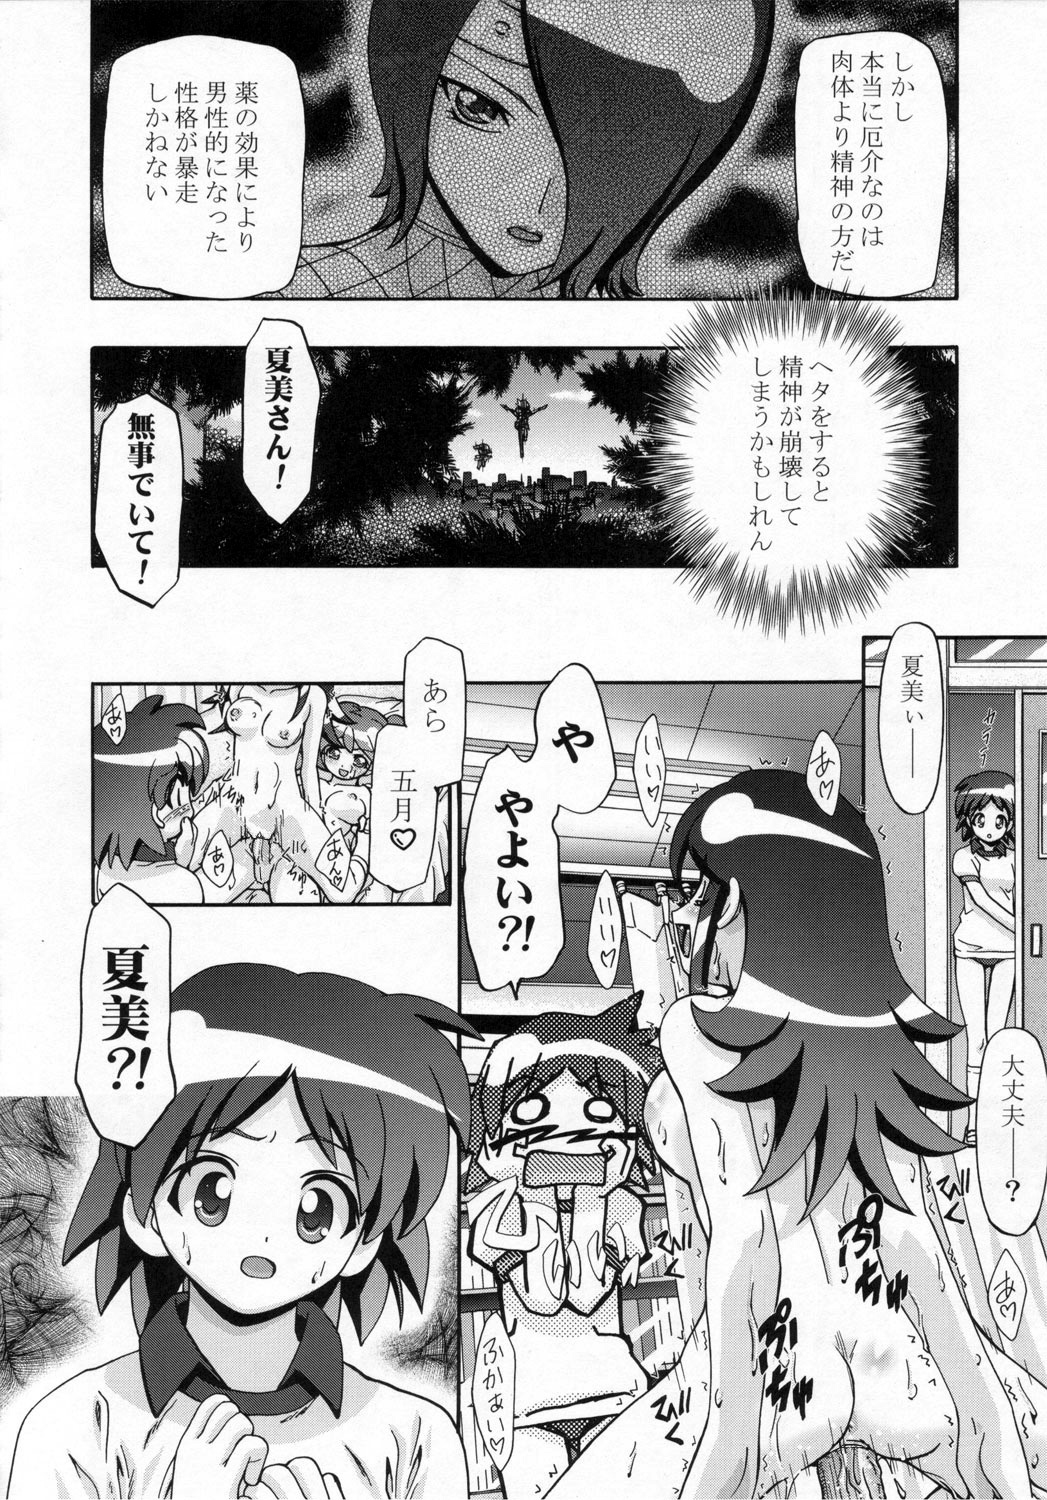 (SC31) [Gambler Club (Kousaka Jun)] Natsu Yuki - Summer Snow (Keroro Gunsou) page 23 full